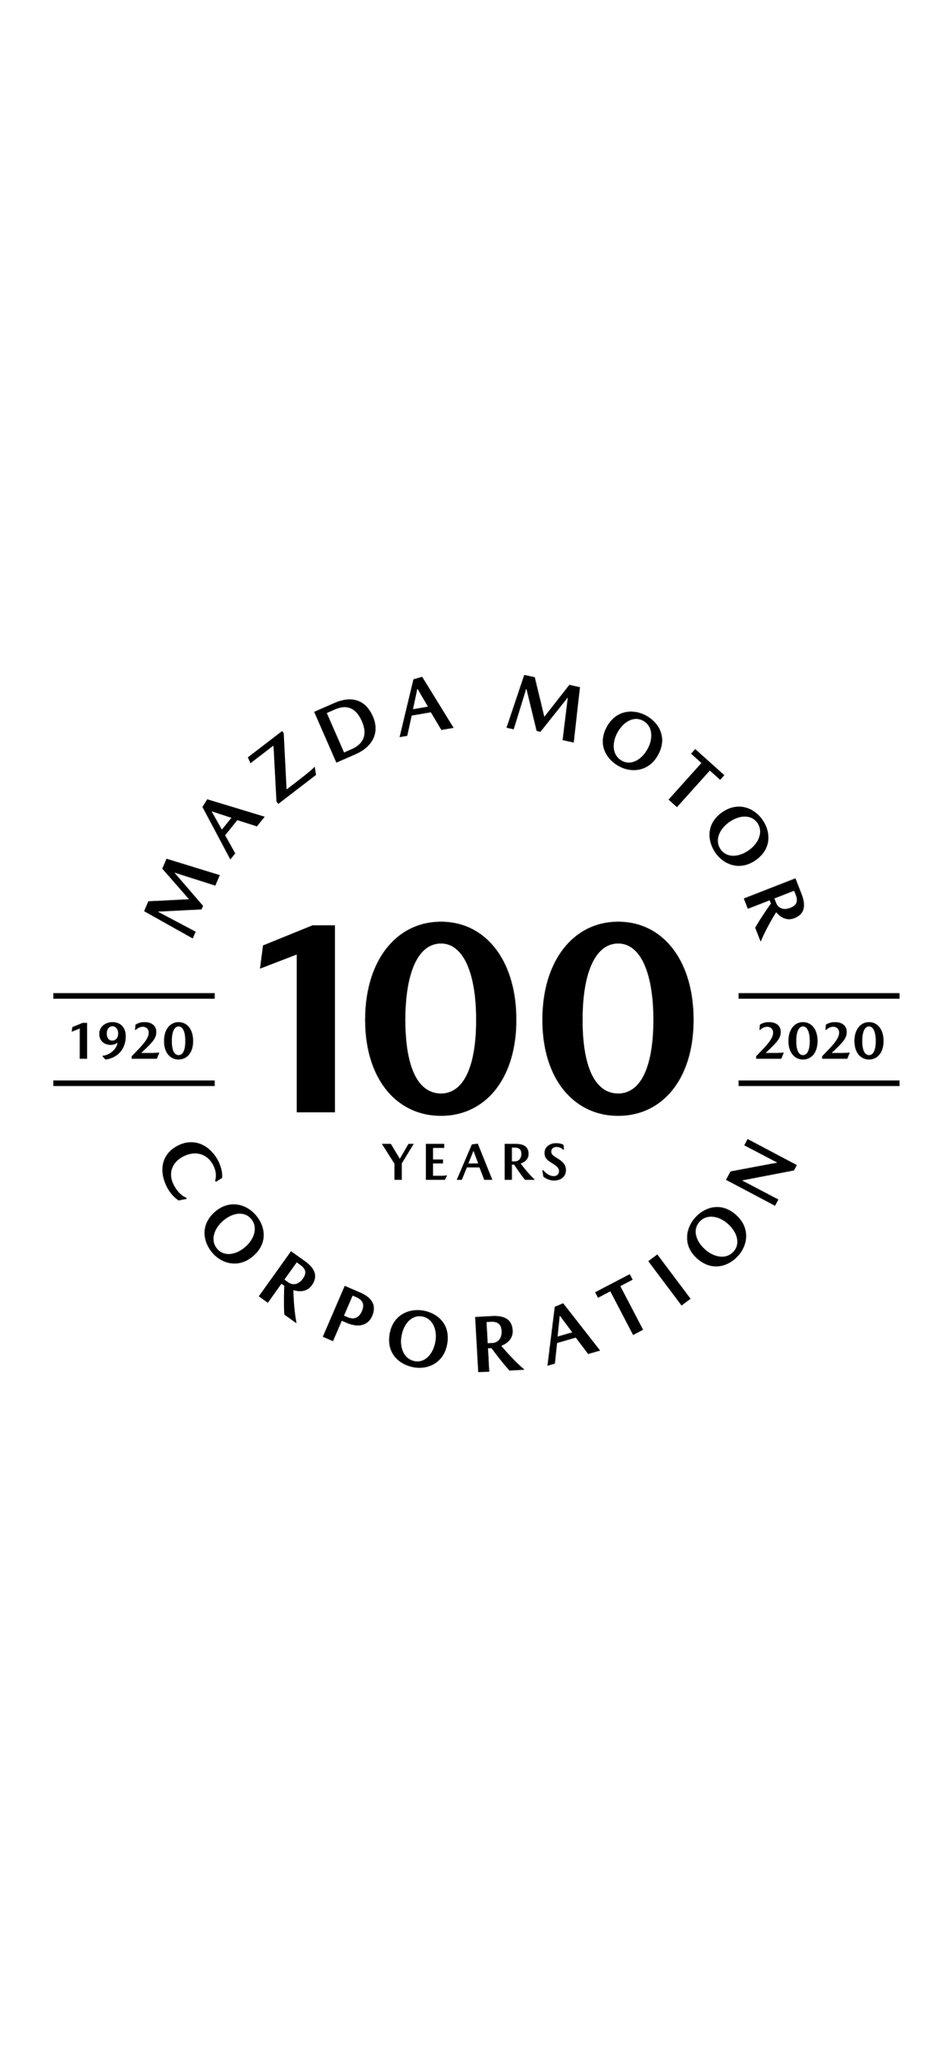 マツダ株式会社 Mazda100years のロゴ すでに多くのみなさまに愛車との画像を投稿いただき ありがとうございます スマホの壁紙にもいかが と考え 画像を作ってみました よろしければご利用ください 元ロゴのダウンロードはこちら T